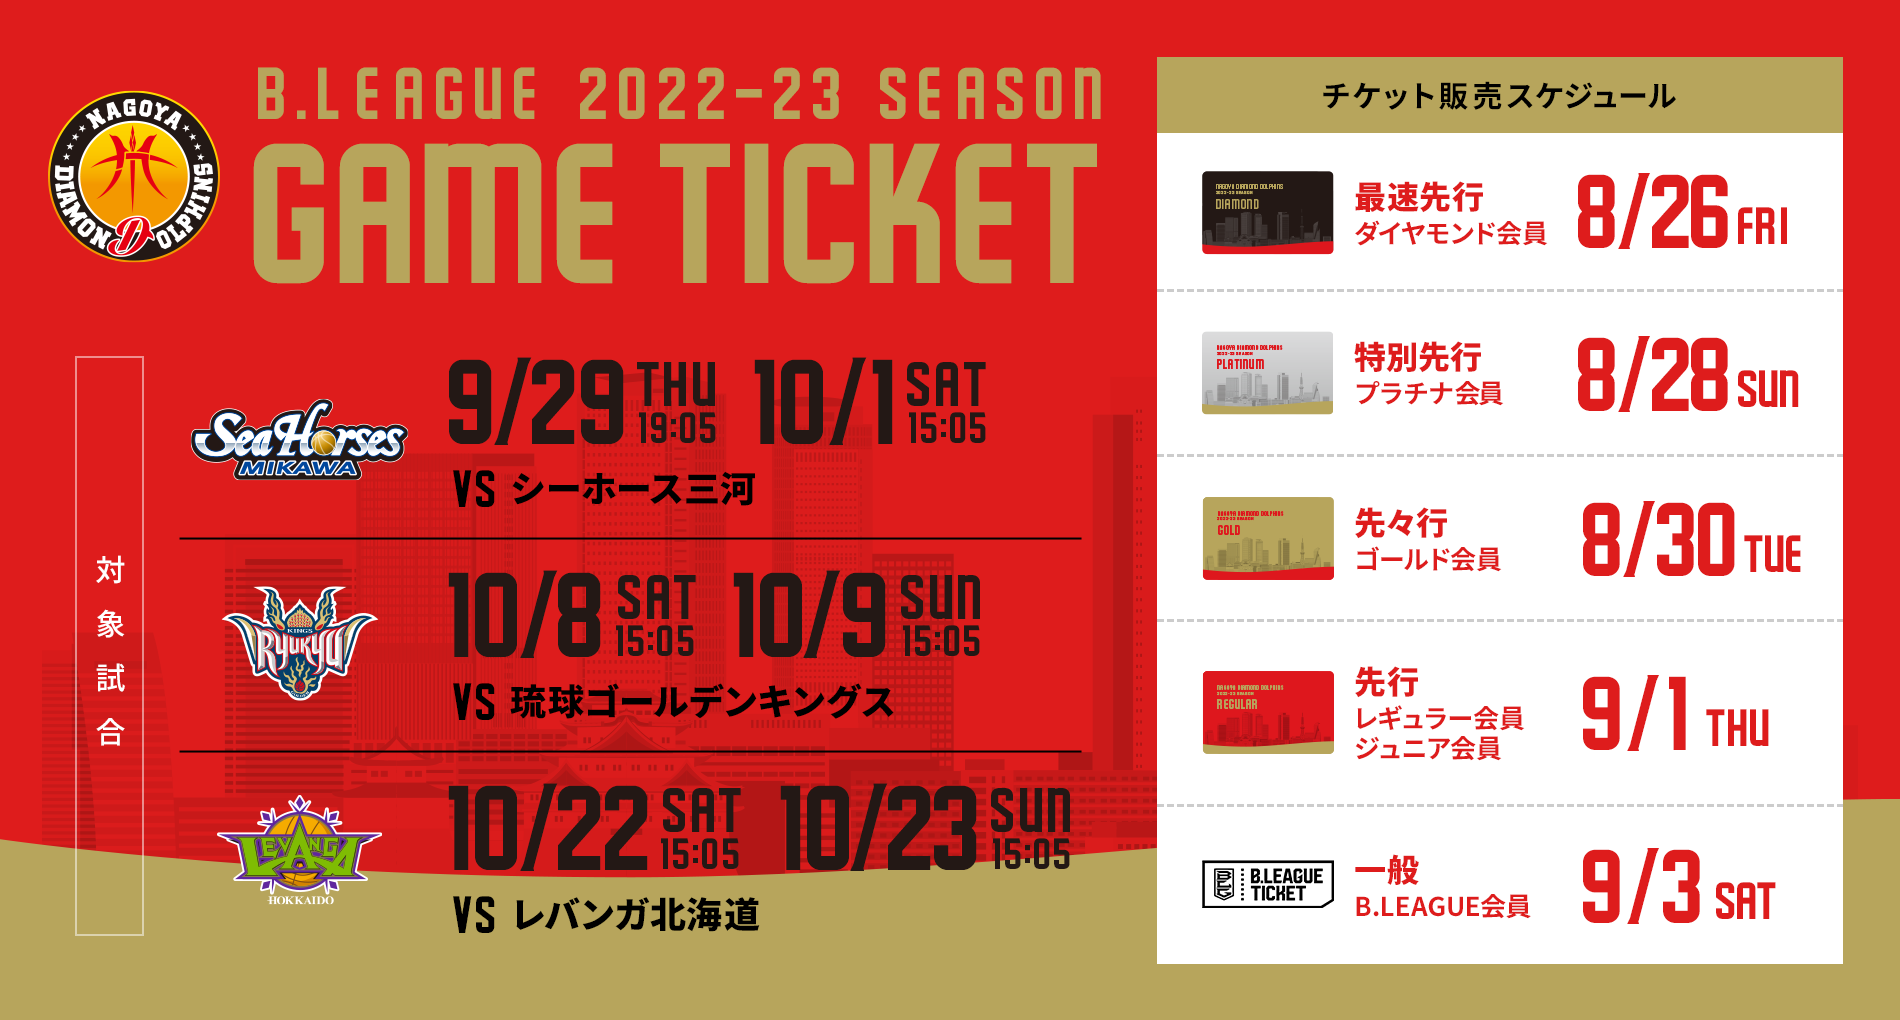 更新】2022-23シーズン 【第1期】チケット販売スケジュールのお知らせ